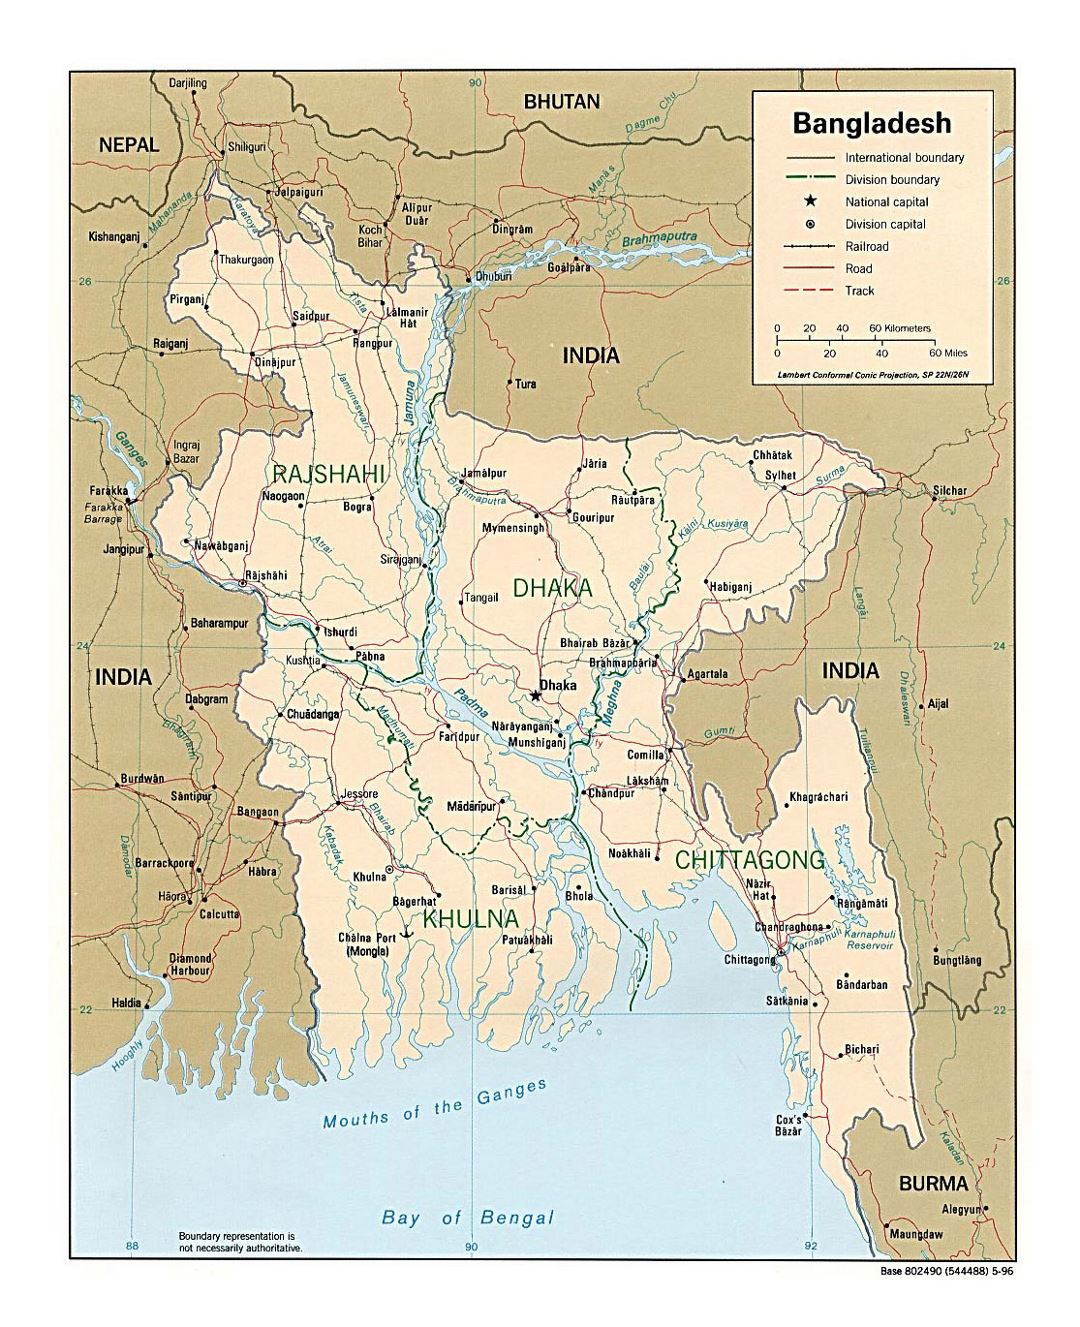 Detallado mapa político y administrativo de Bangladesh con carreteras y principales ciudades - 1996